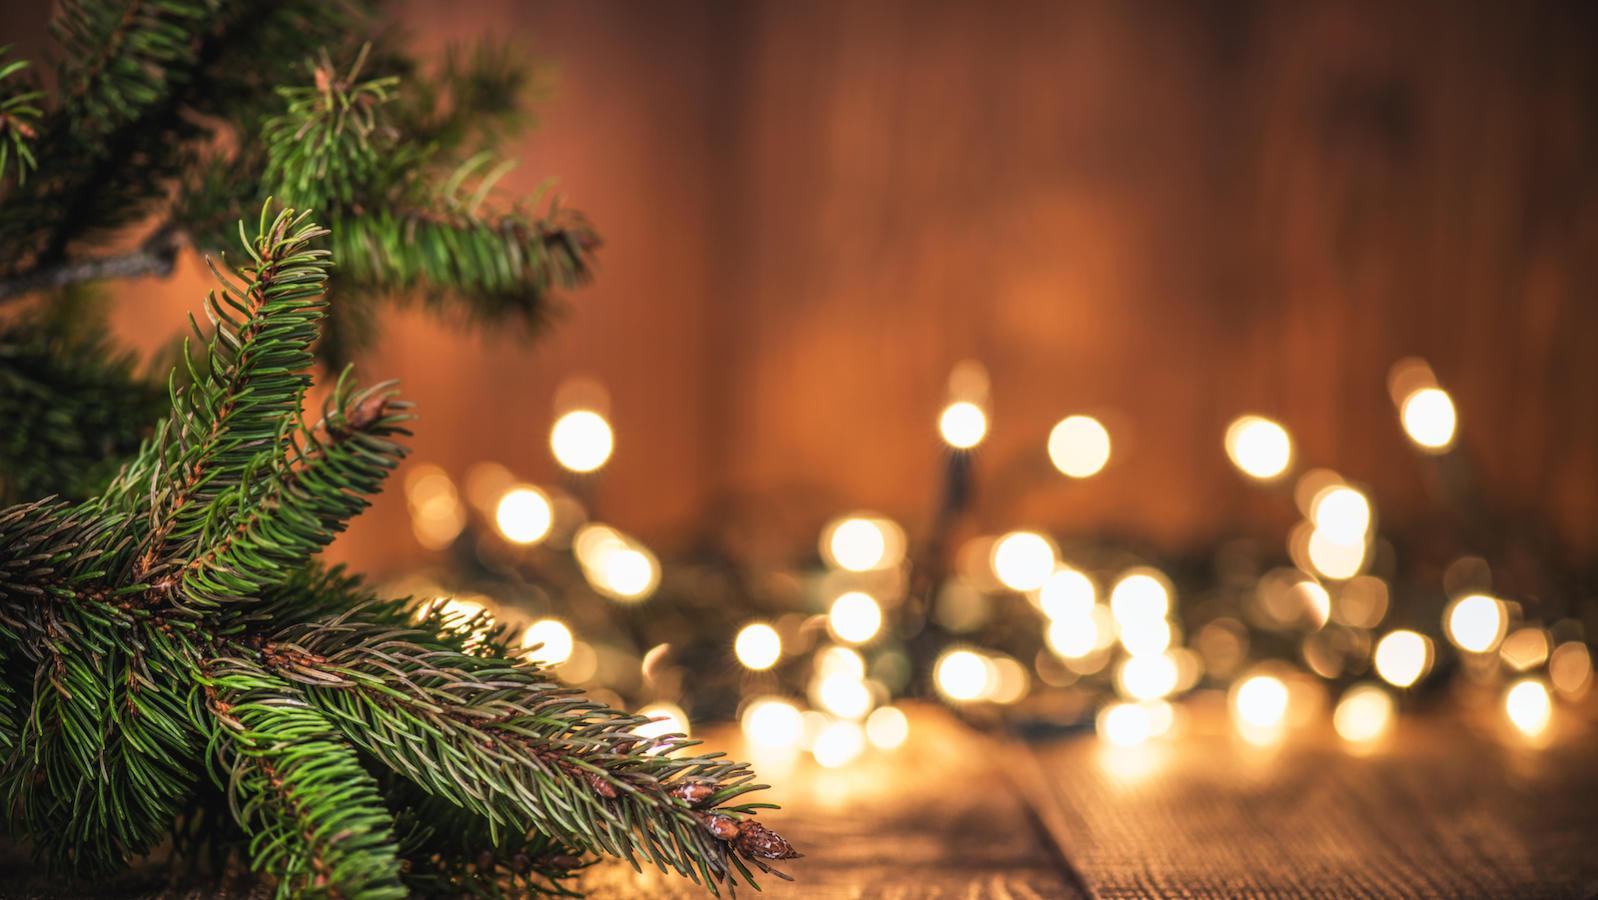 10 piosenek, które wprawią Cię w świąteczny nastrój  | Zuzka Pisze